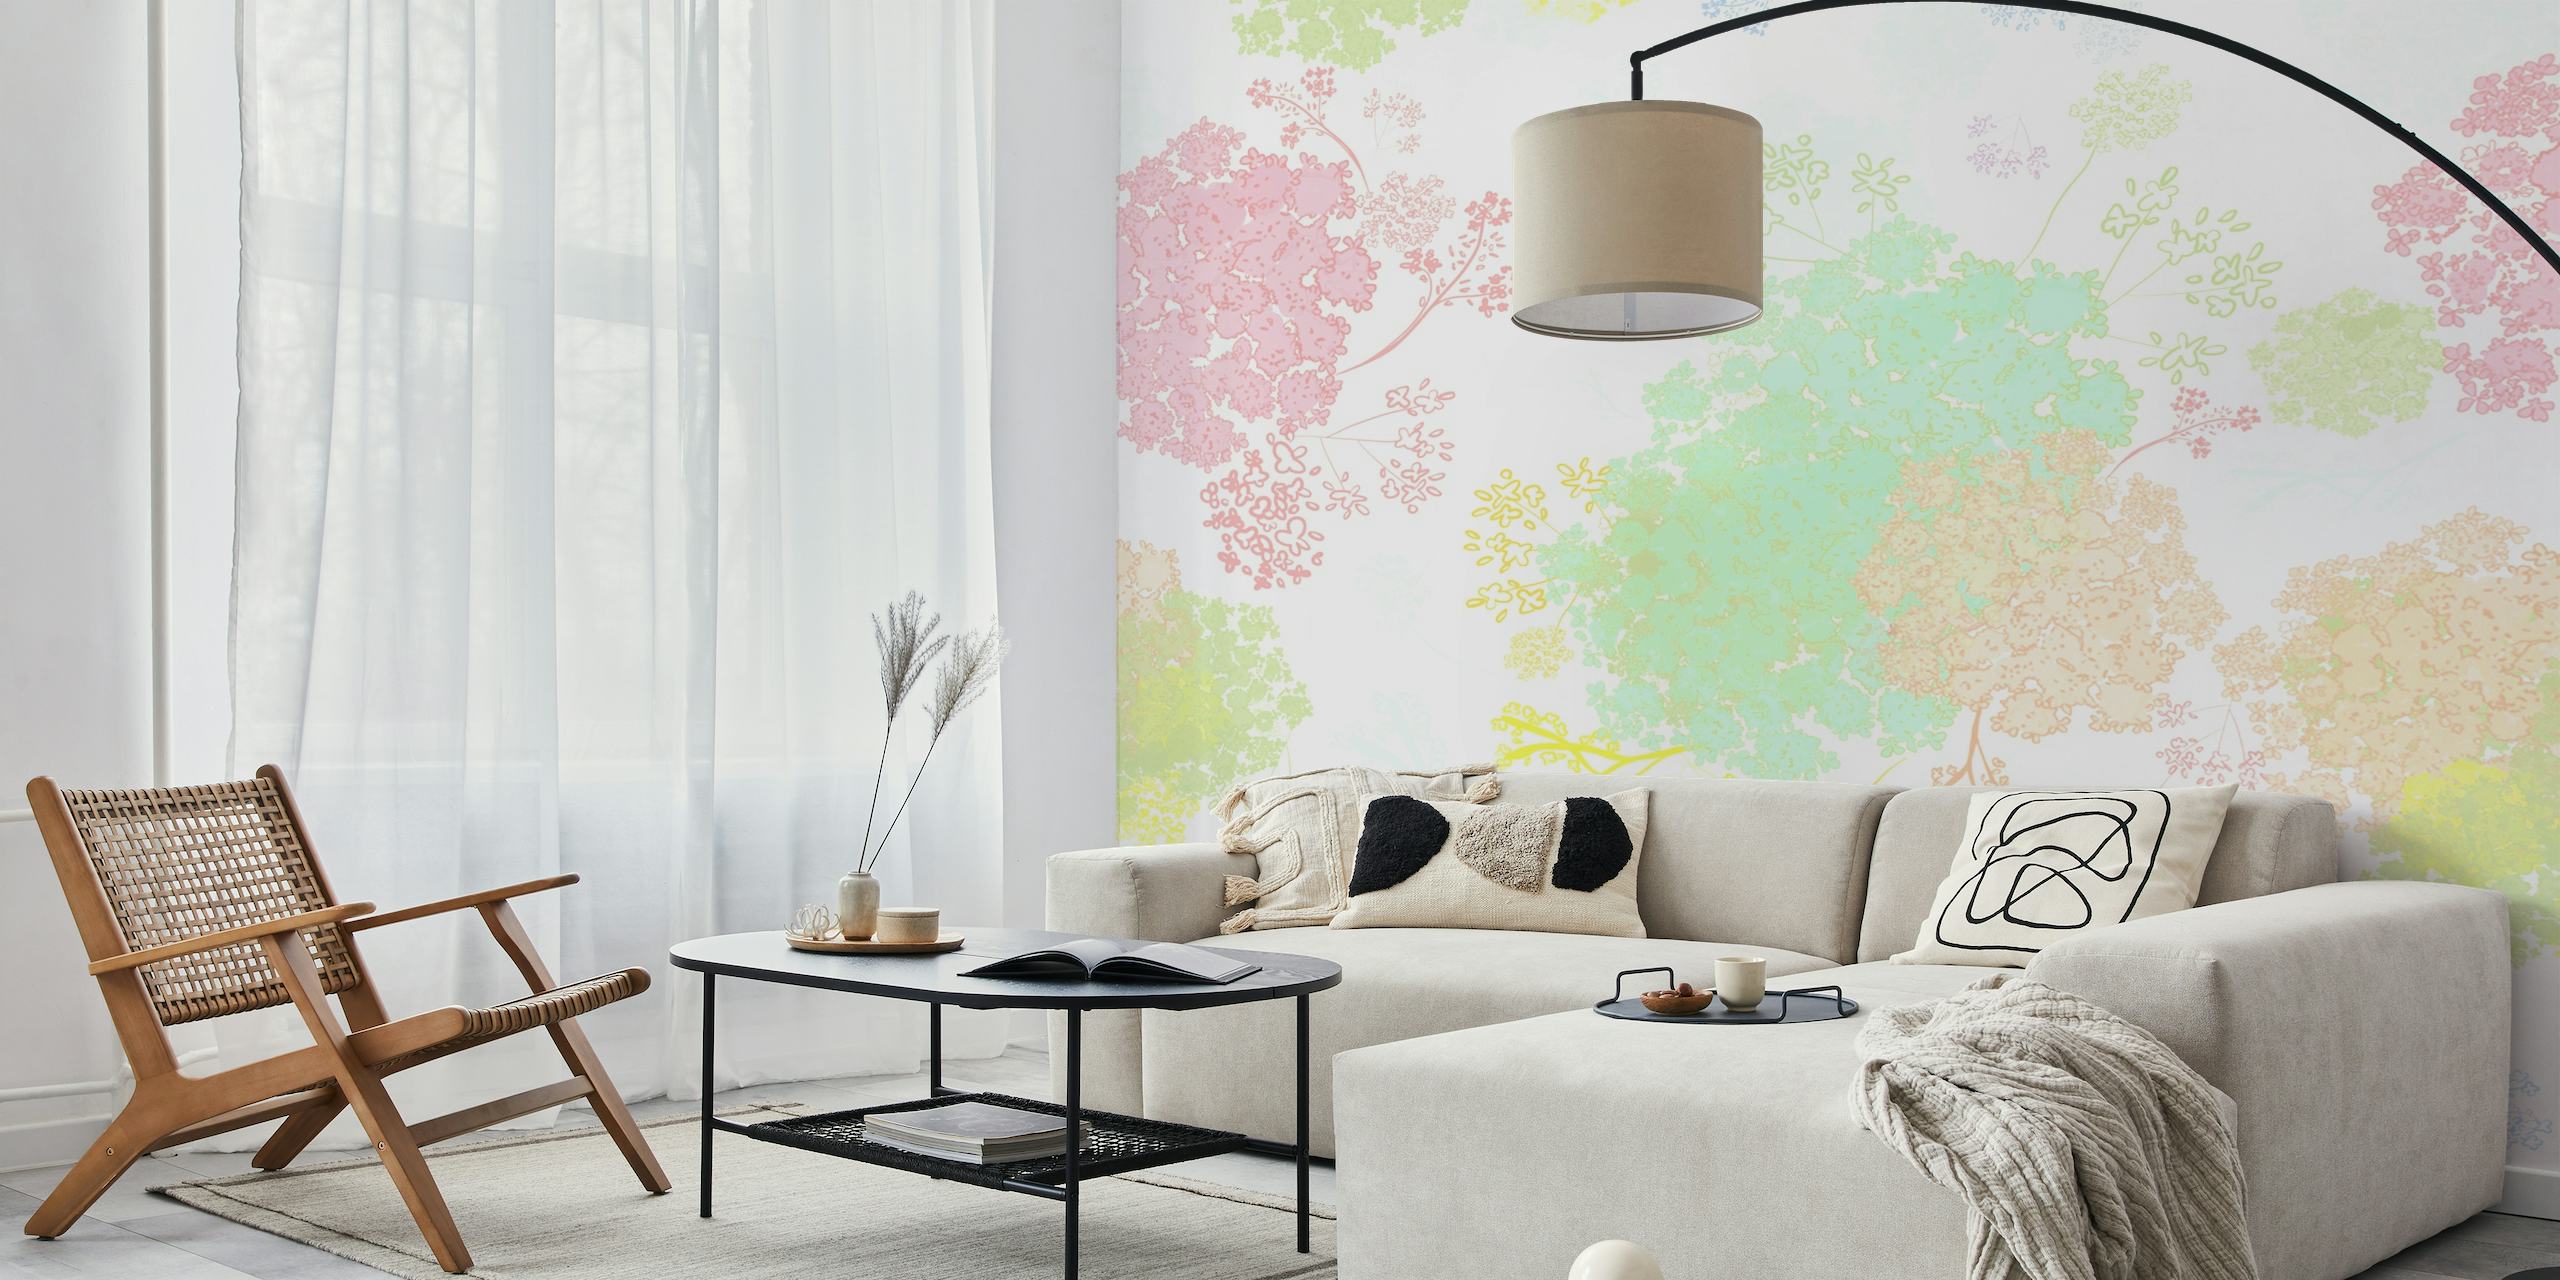 Pastelkleurige muurschildering met bloemenkantpatroon